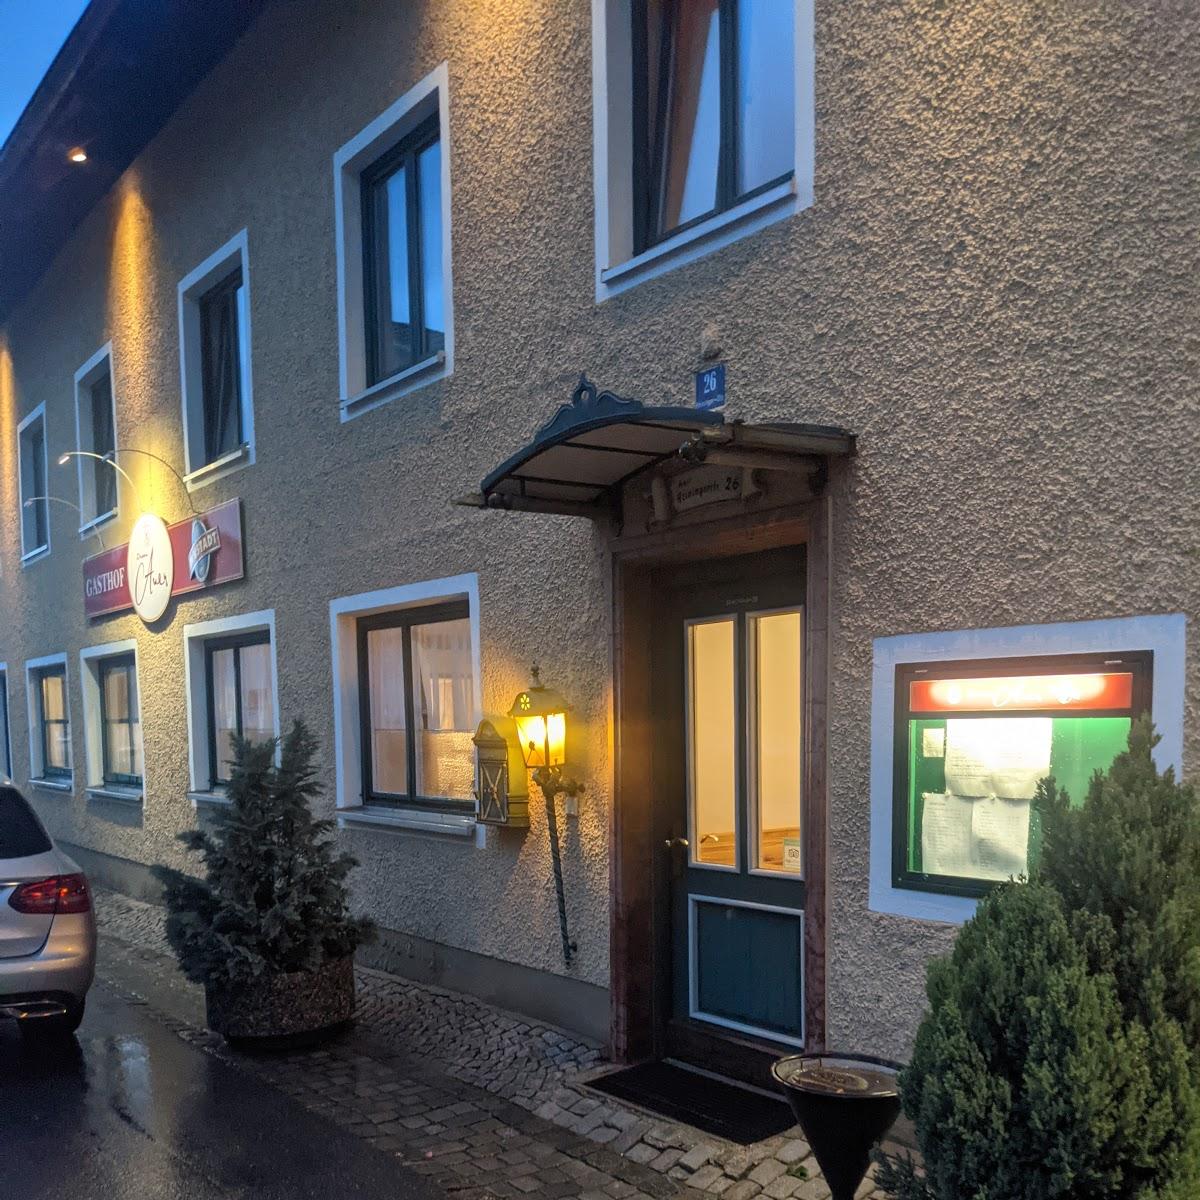 Restaurant "Gasthof Auer" in Passau